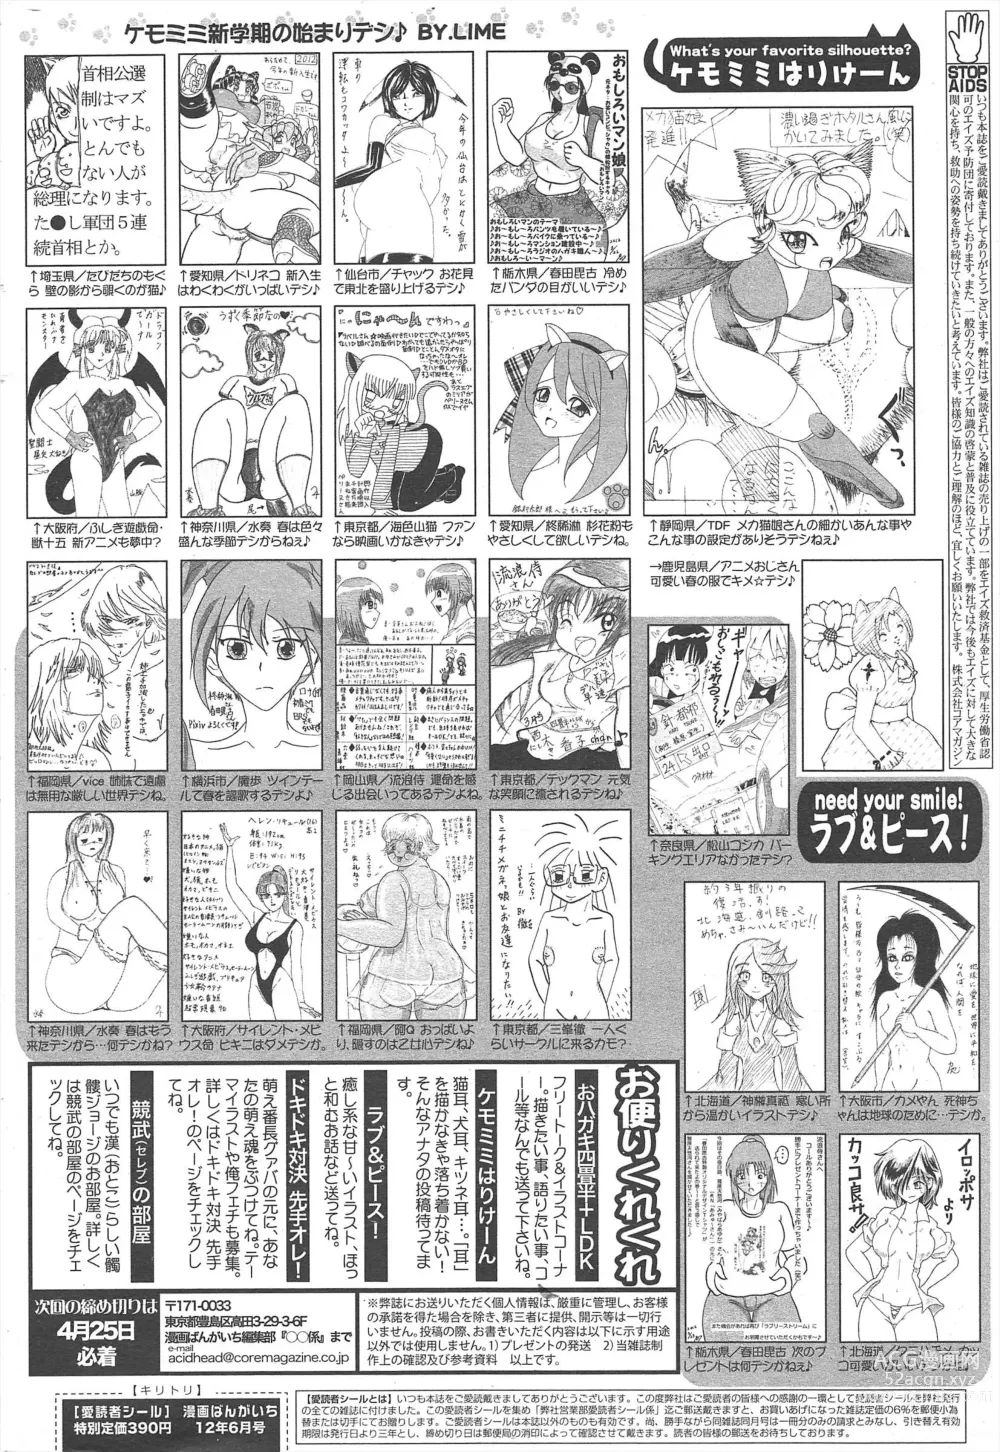 Page 326 of manga Manga Bangaichi 2012-06